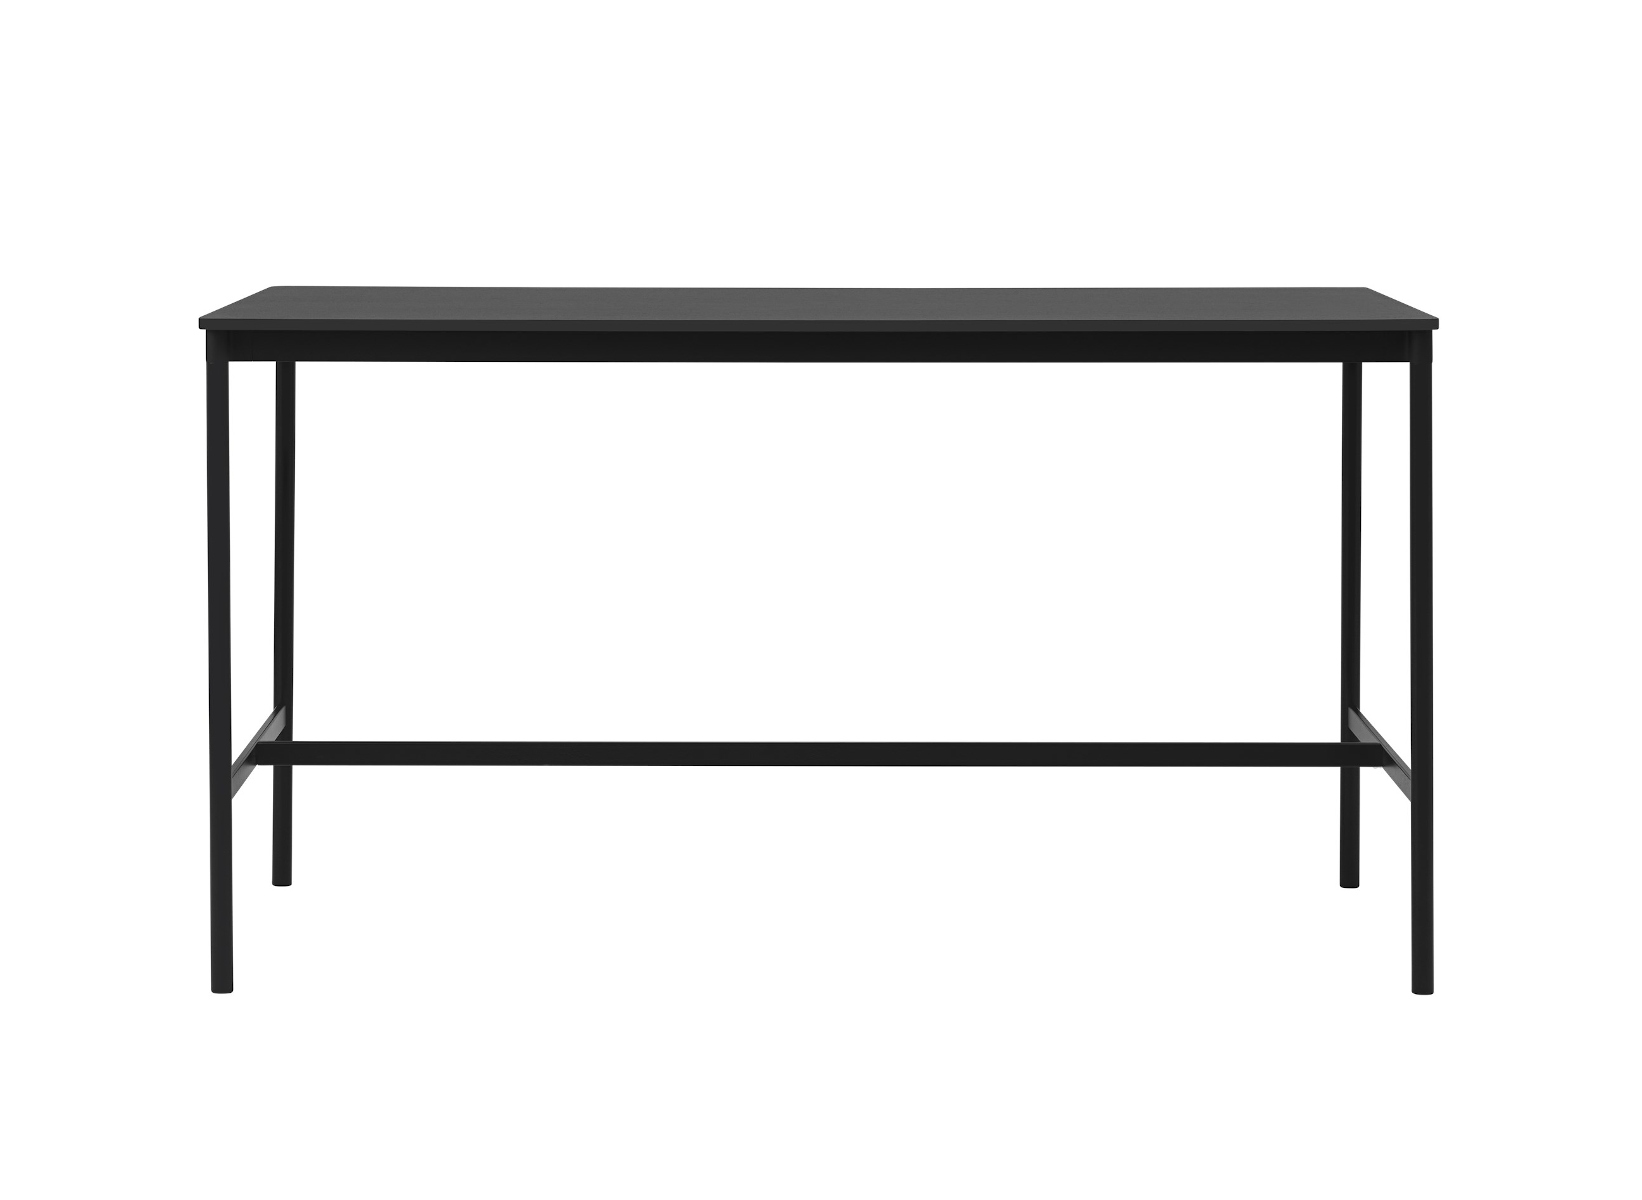 Base Stehtisch, 190 x 85 cm, höhe 105cm, schwarz laminat / schwarz abs